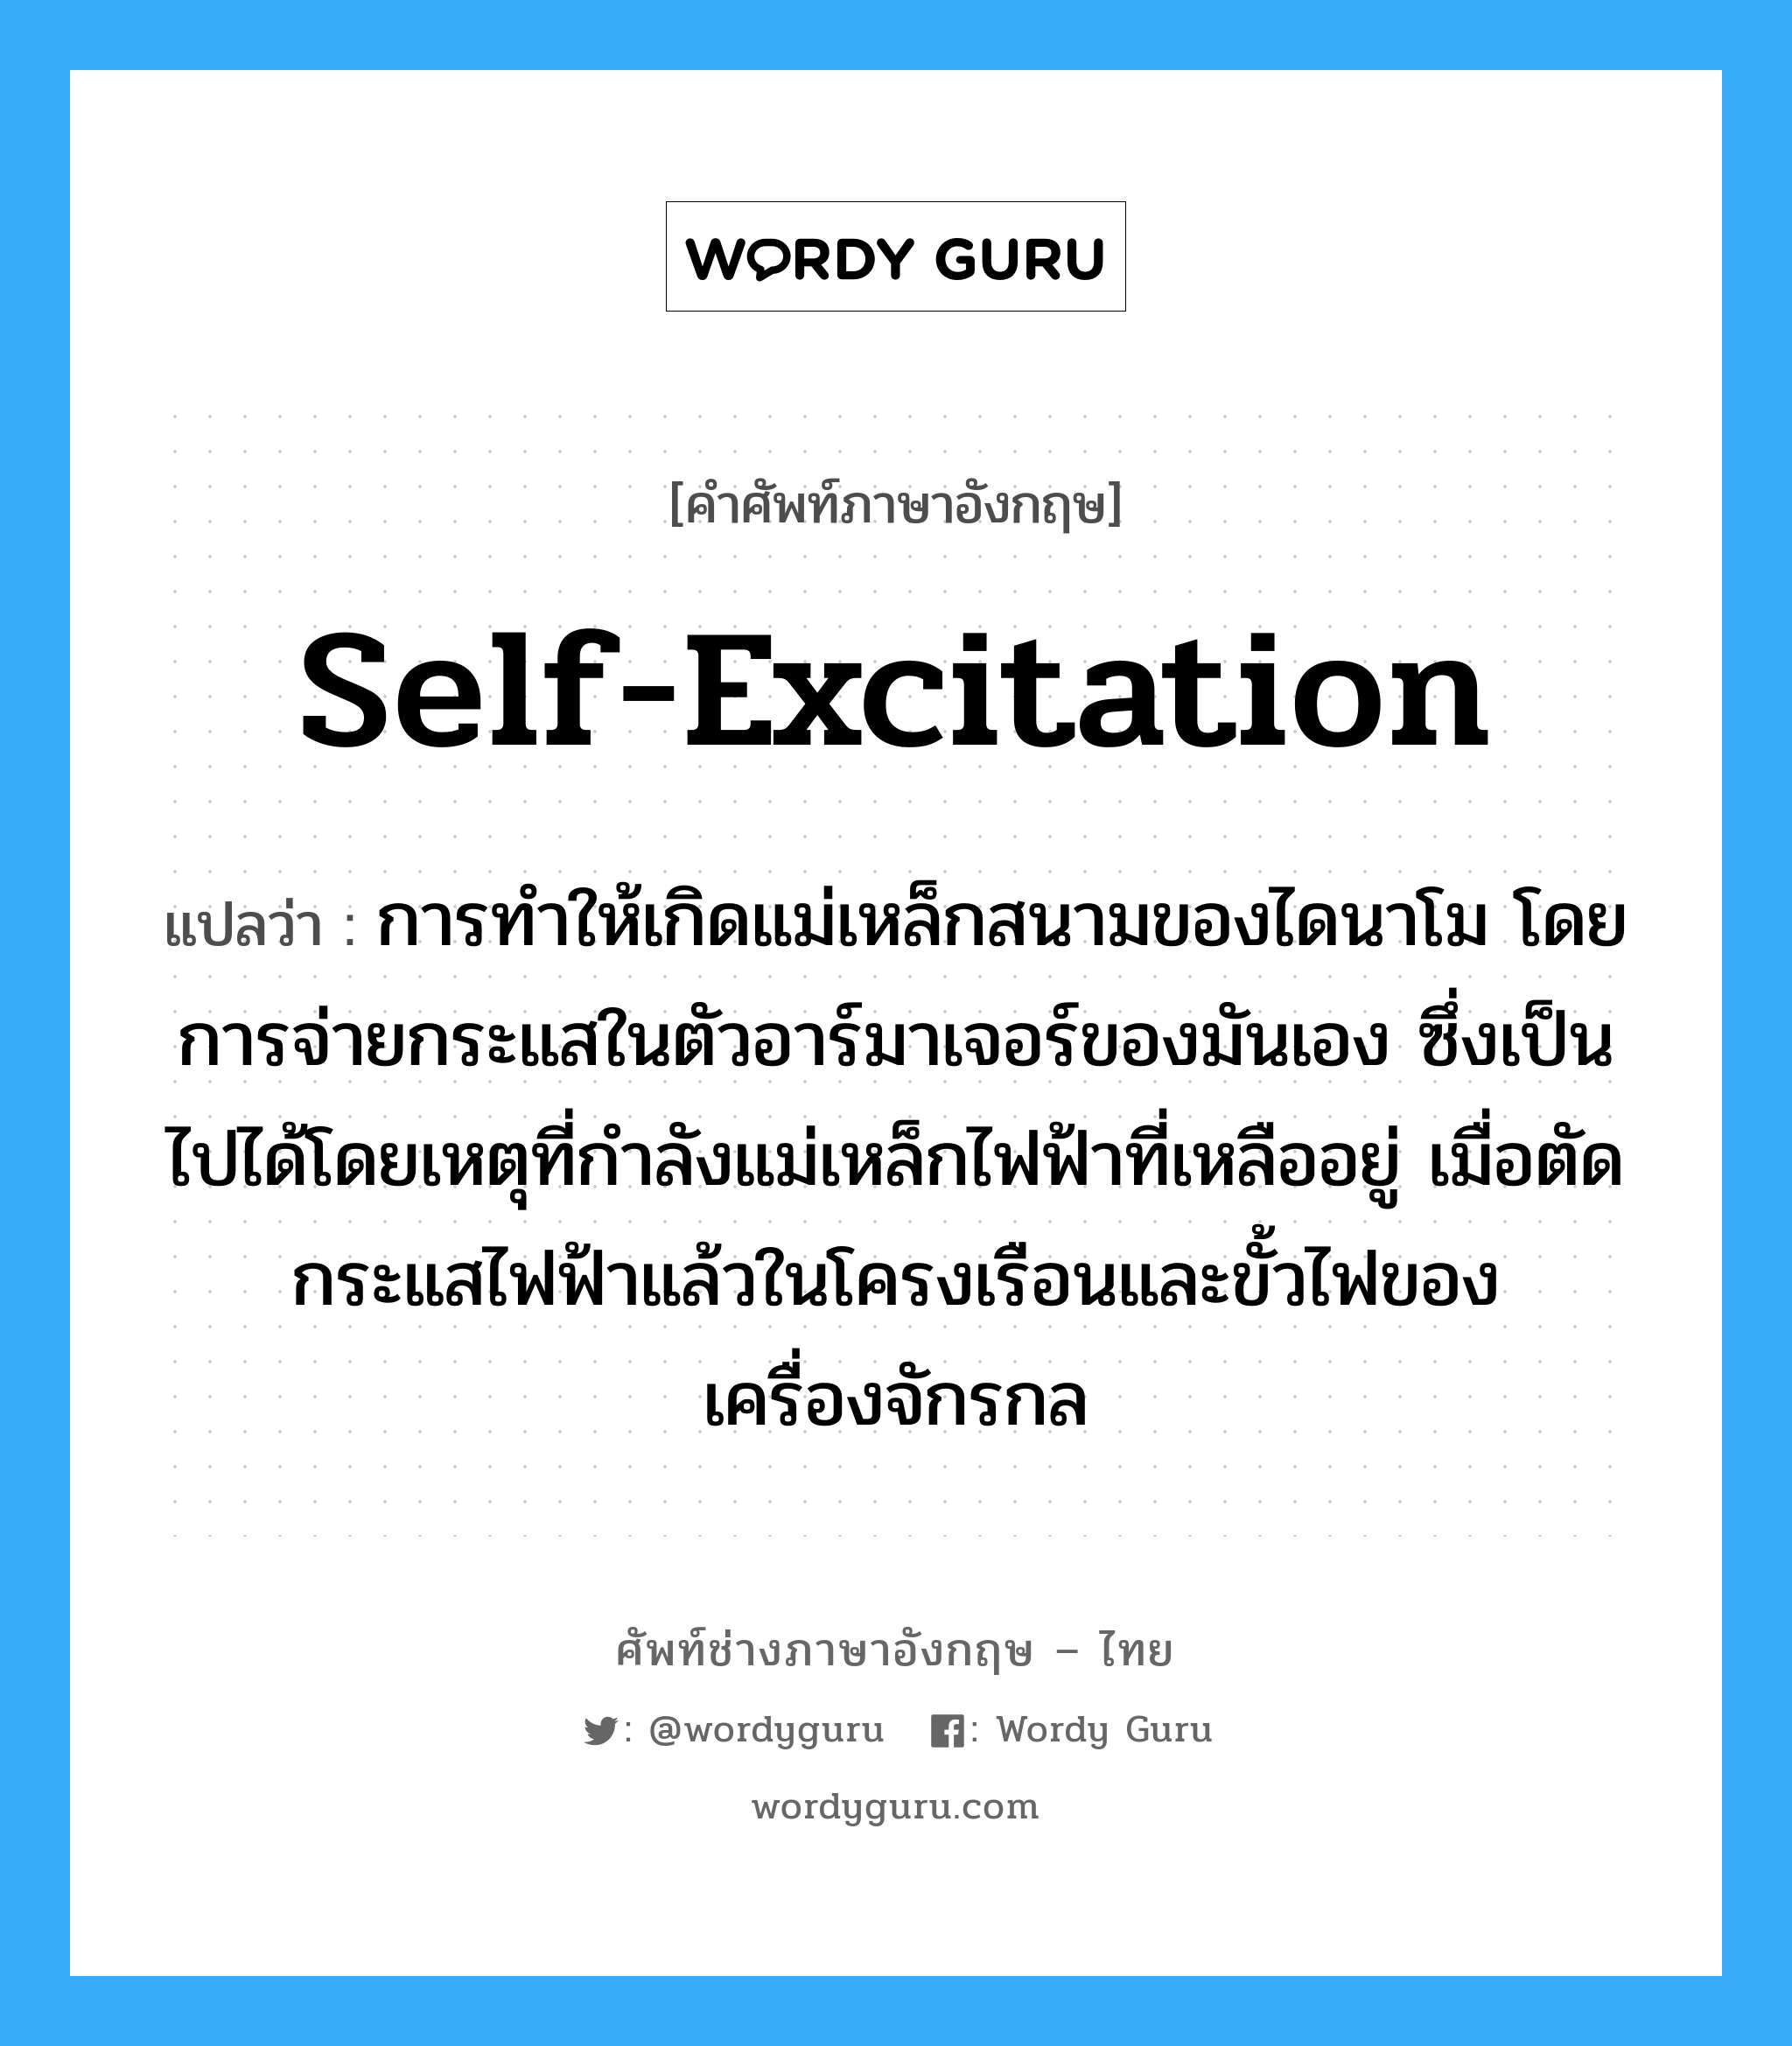 self-excitation แปลว่า?, คำศัพท์ช่างภาษาอังกฤษ - ไทย self-excitation คำศัพท์ภาษาอังกฤษ self-excitation แปลว่า การทำให้เกิดแม่เหล็กสนามของไดนาโม โดยการจ่ายกระแสในตัวอาร์มาเจอร์ของมันเอง ซึ่งเป็นไปได้โดยเหตุที่กำลังแม่เหล็กไฟฟ้าที่เหลืออยู่ เมื่อตัดกระแสไฟฟ้าแล้วในโครงเรือนและขั้วไฟของเครื่องจักรกล